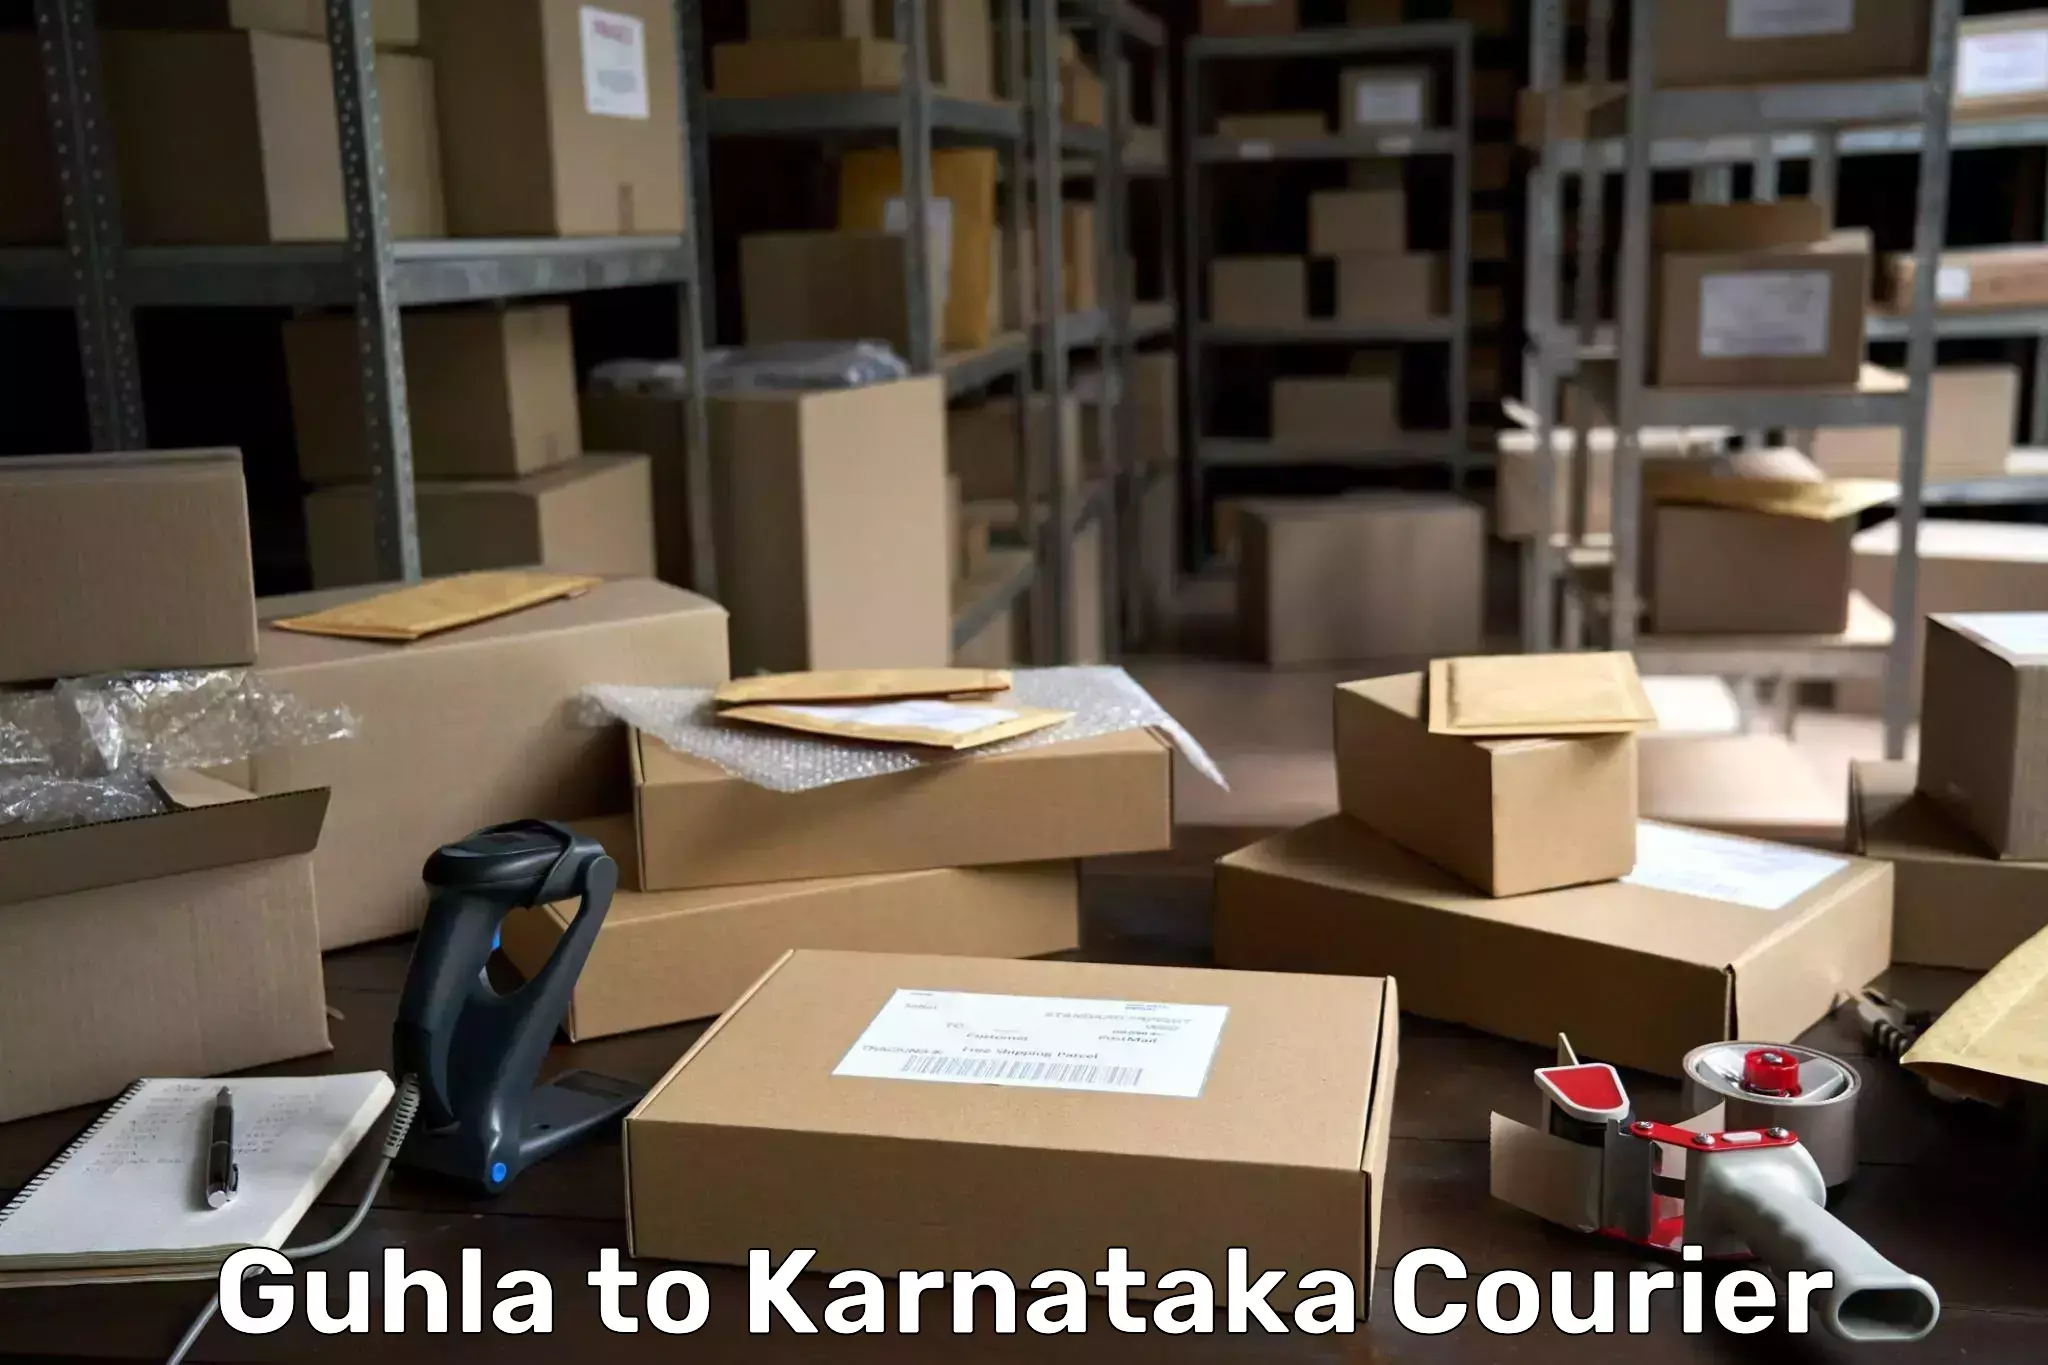 Holiday shipping services Guhla to Karnataka